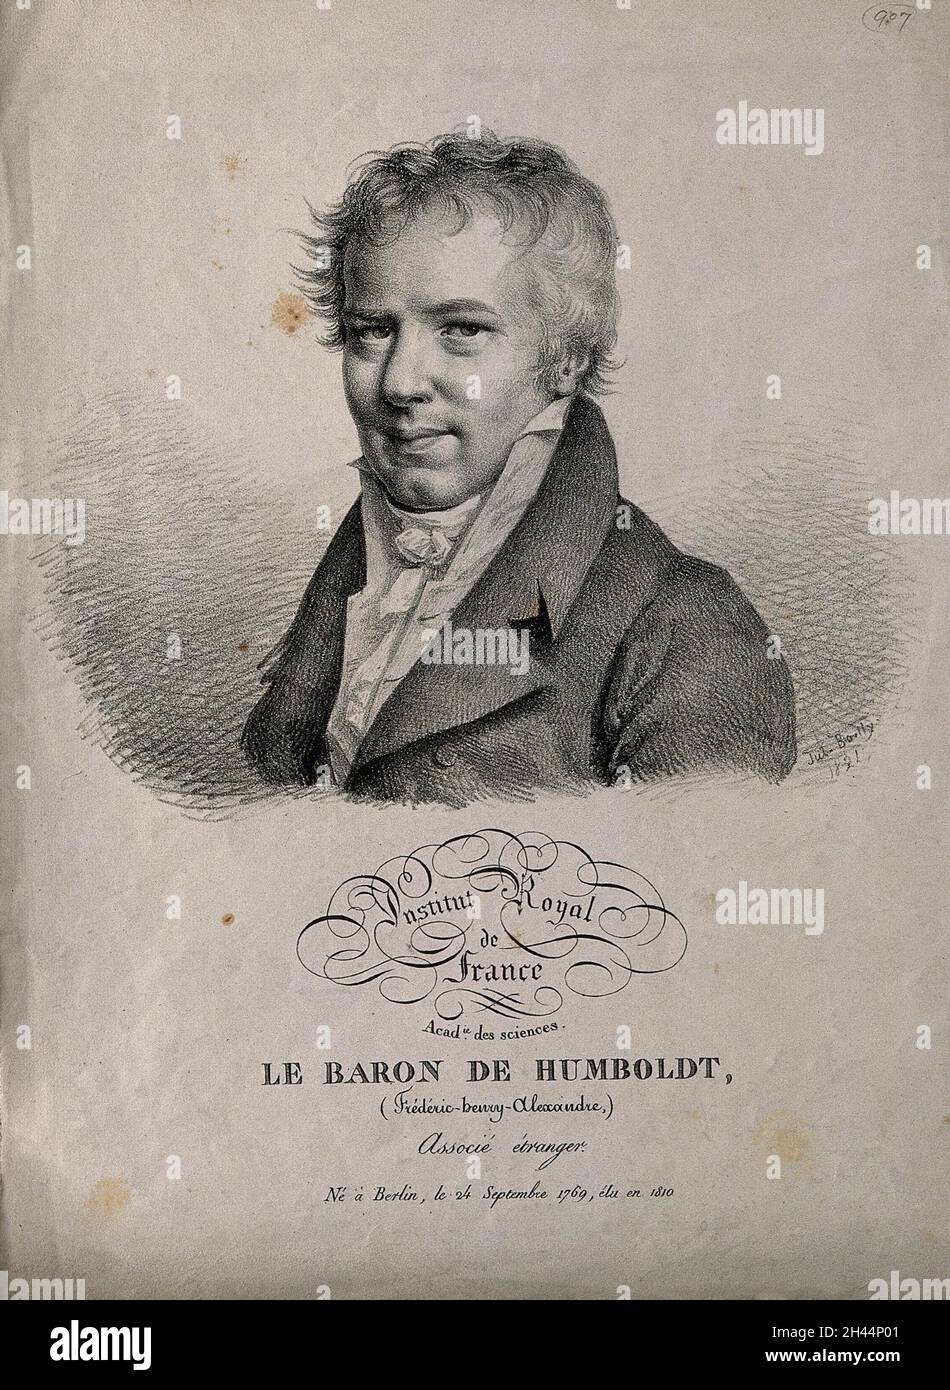 Friedrich Heinrich Alexander von Humboldt. Lithograph by J. Boilly, 1821. Stock Photo